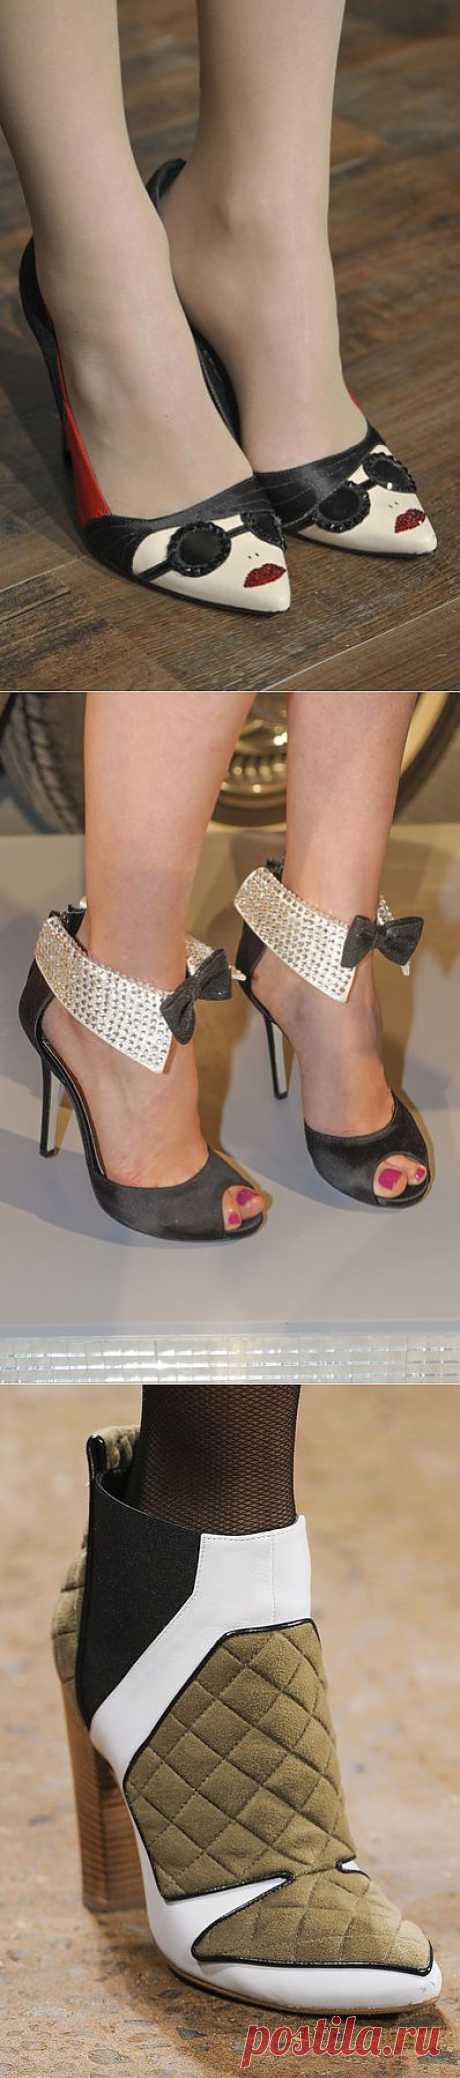 Обувная энциклопедия New York Fashion Week 2013 (трафик) / Обувь / Модный сайт о стильной переделке одежды и интерьера